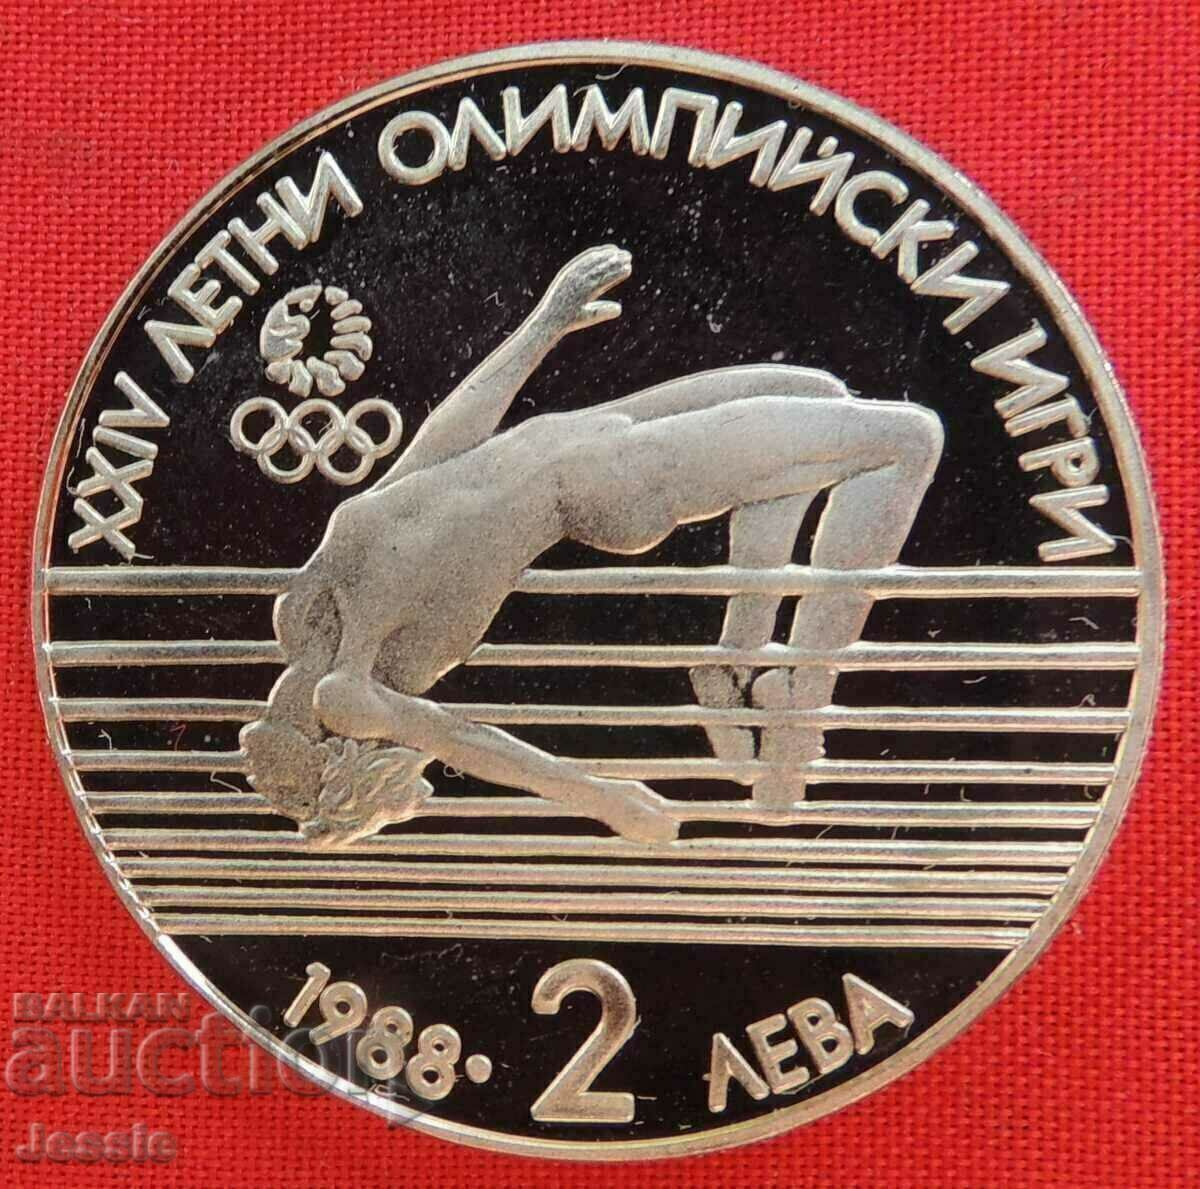 2 BGN 1988 XXIV Θερινοί Ολυμπιακοί Αγώνες - Νομισματοκοπείο - ΕΞΑΝΤΛΗΜΕΝΟ ΣΕ BNB